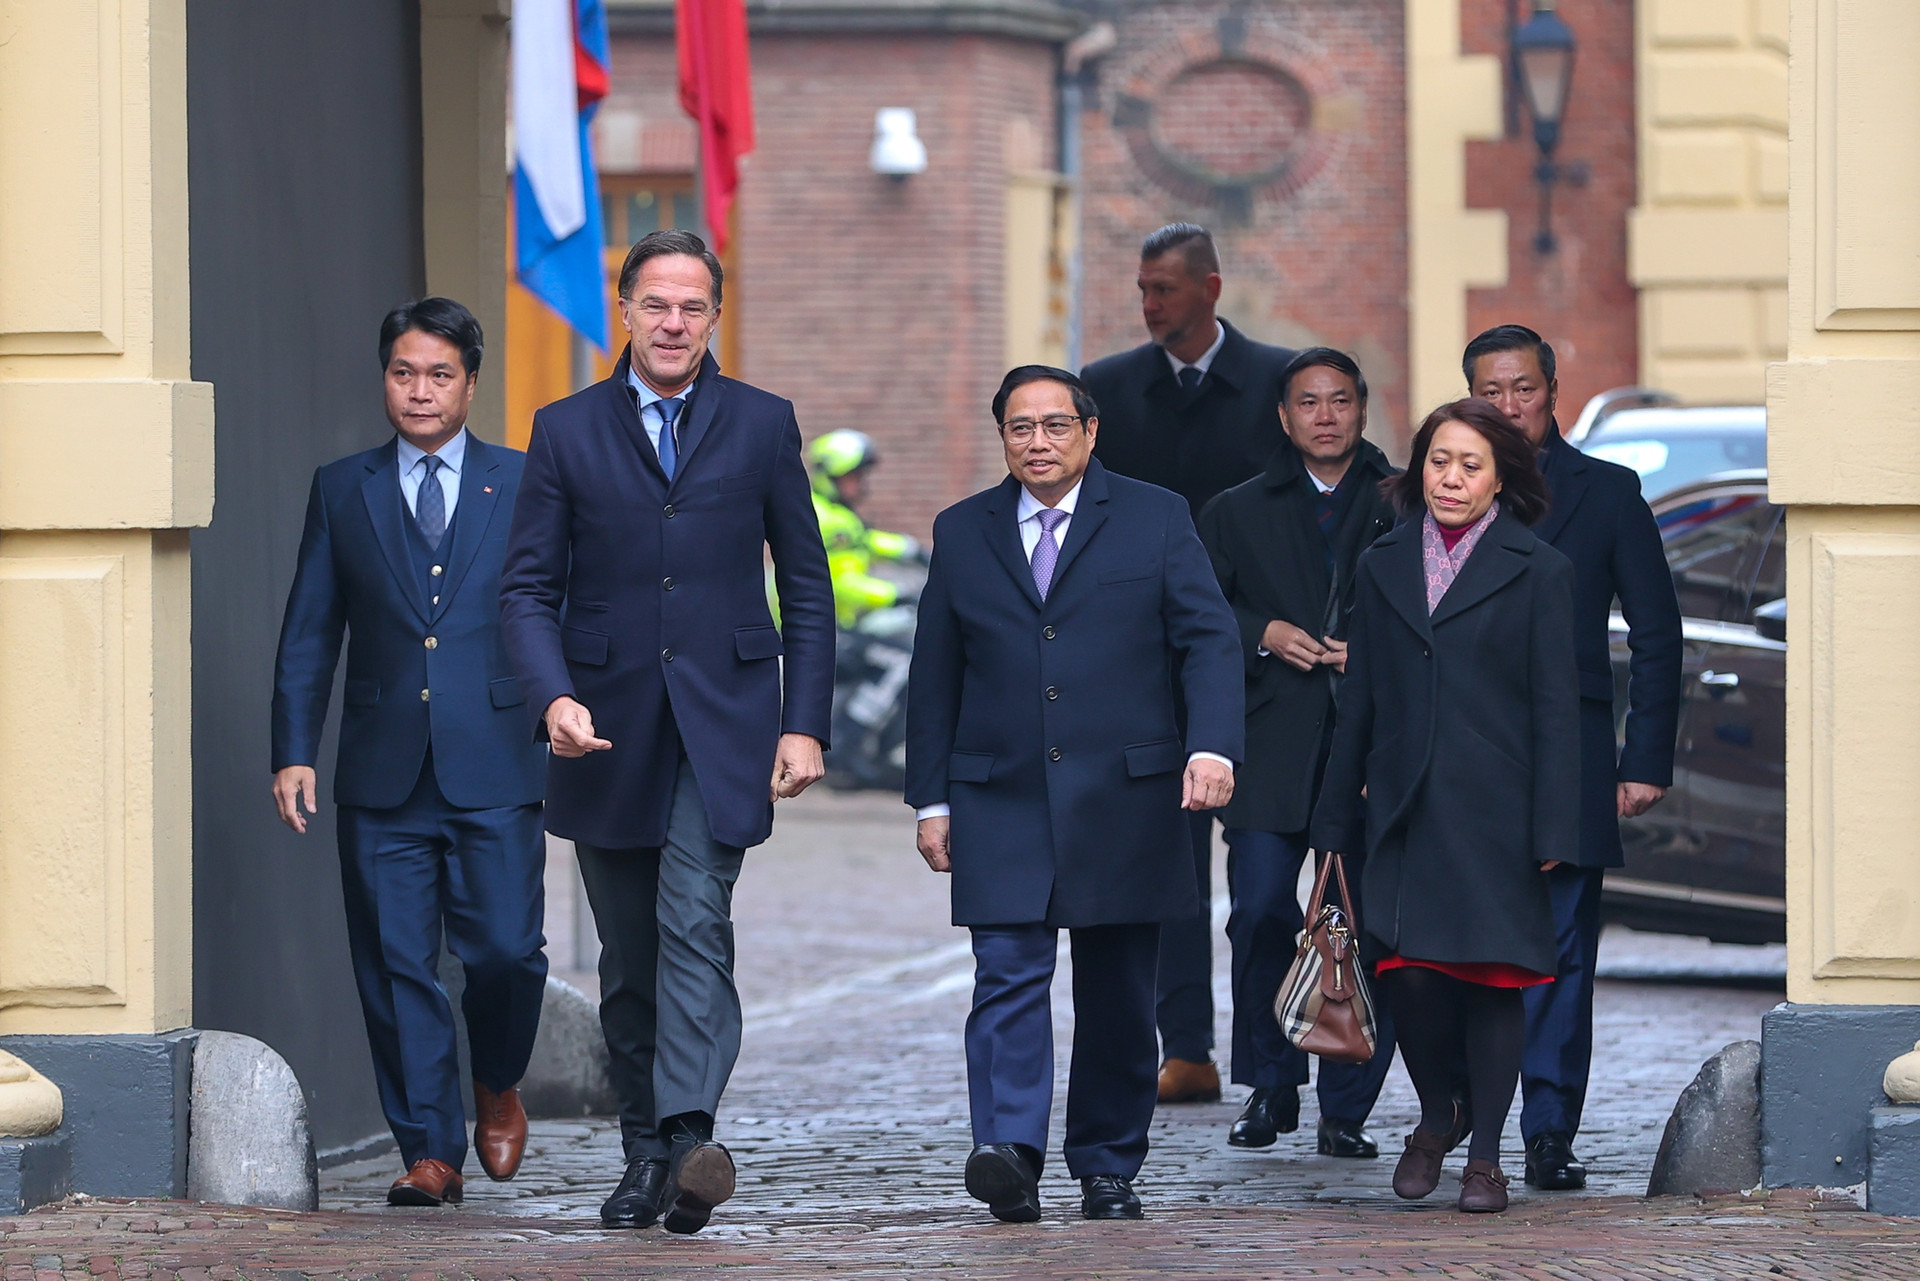 Chùm ảnh: Lễ đón chính thức Thủ tướng Phạm Minh Chính thăm Vương quốc Hà Lan - Ảnh 1.